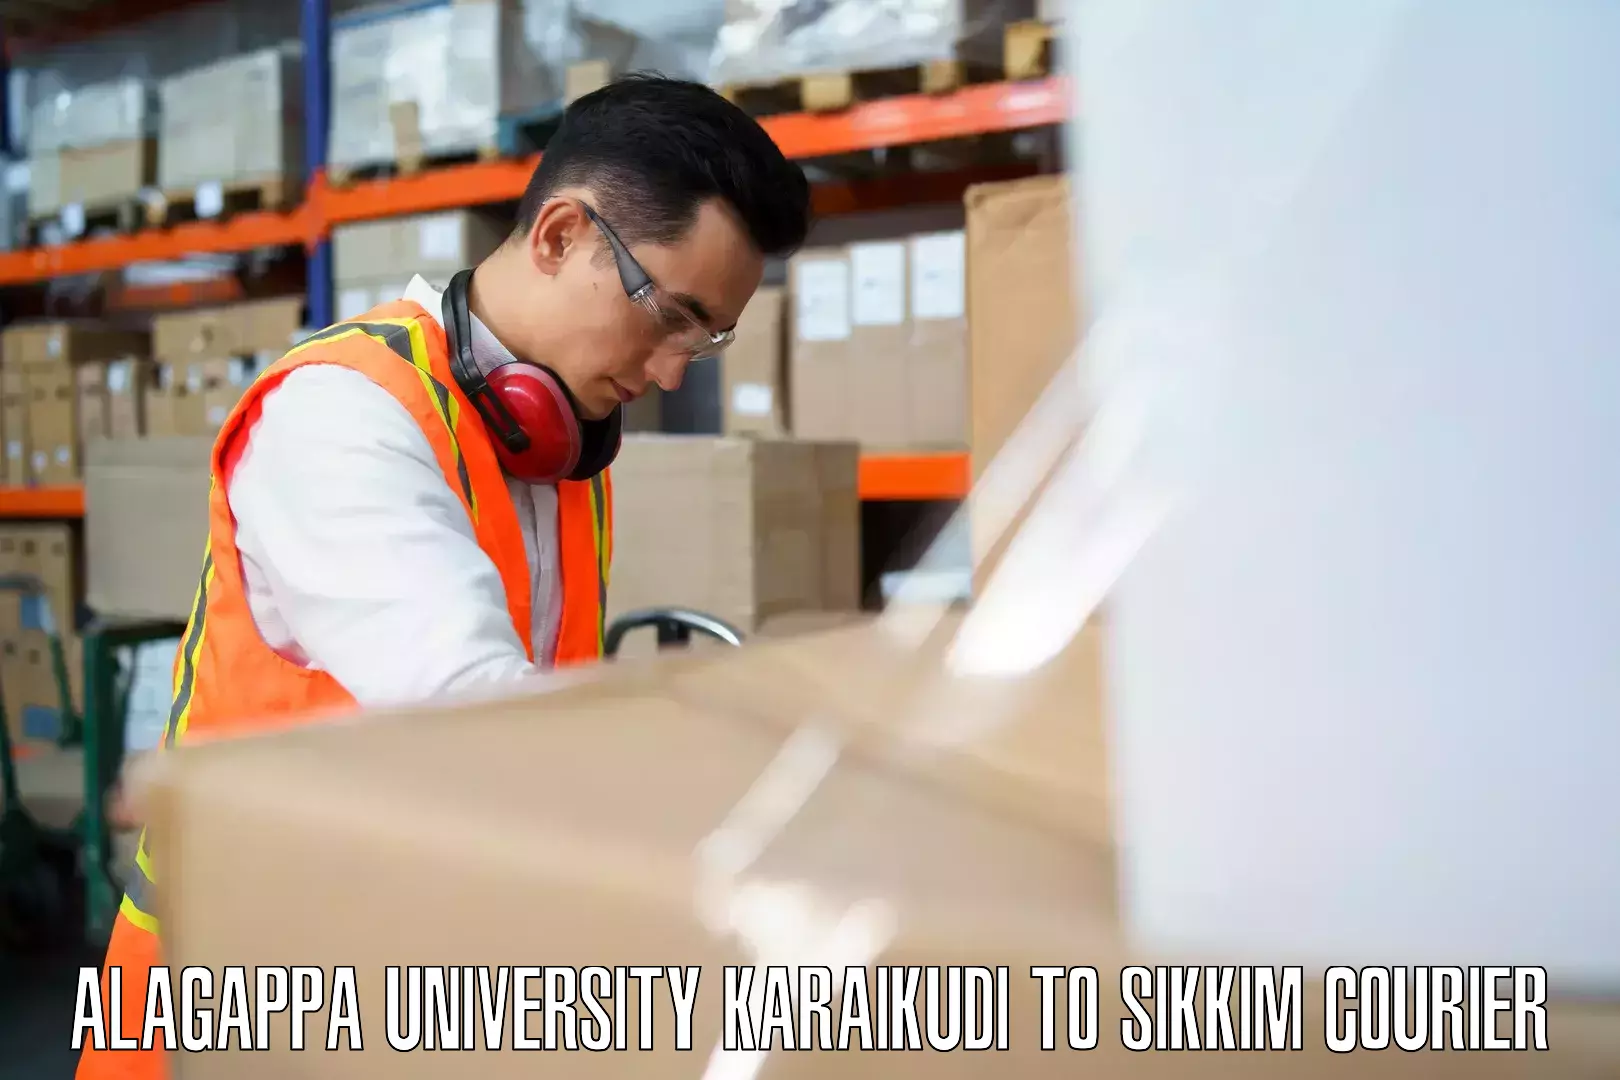 Baggage shipping service Alagappa University Karaikudi to Ranipool